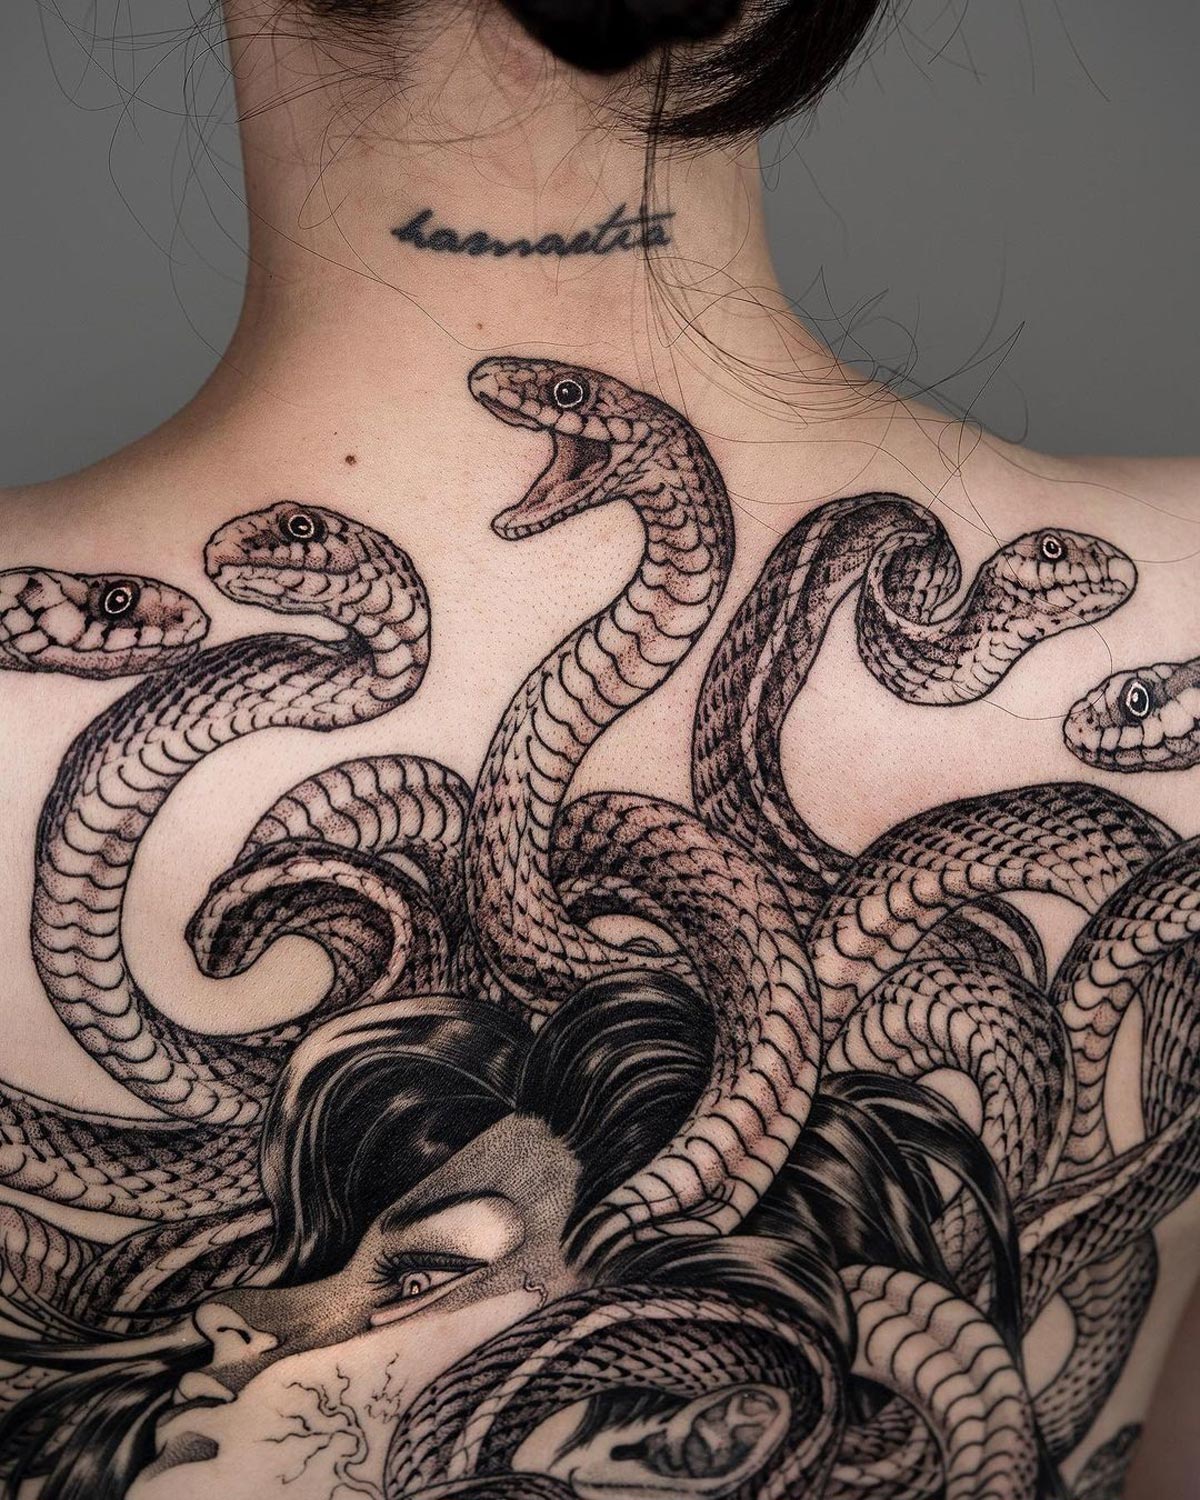 Medusa Girl's Full Back Tattoo | Best Tattoo Ideas For Men & Women